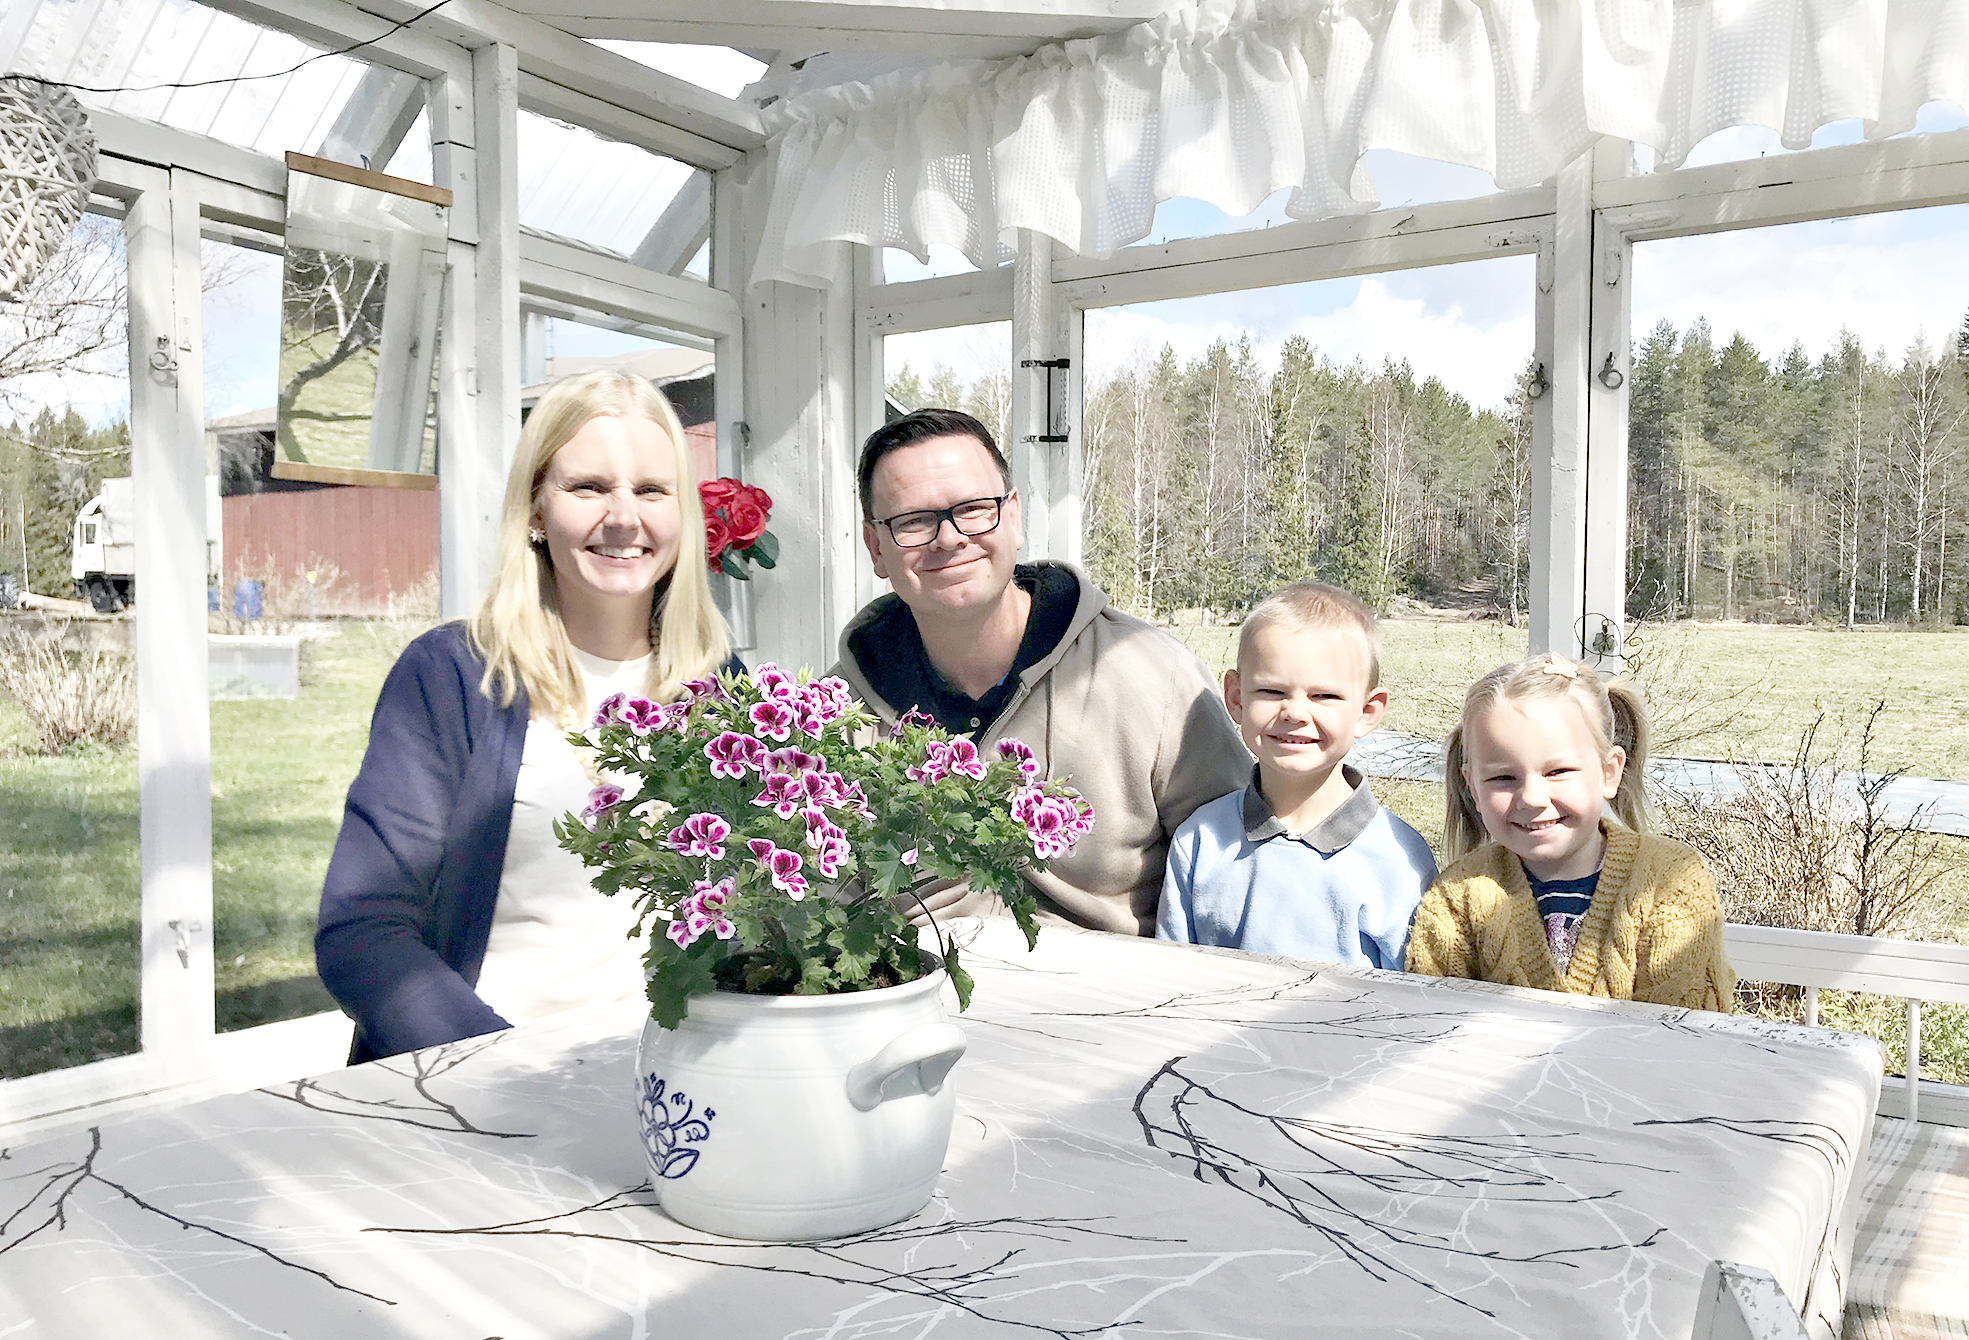 Anni ja Matthew Begutter ja heidän lapsensa Ethan ja Josephine Väli-Mikkolan kesähuoneessa.